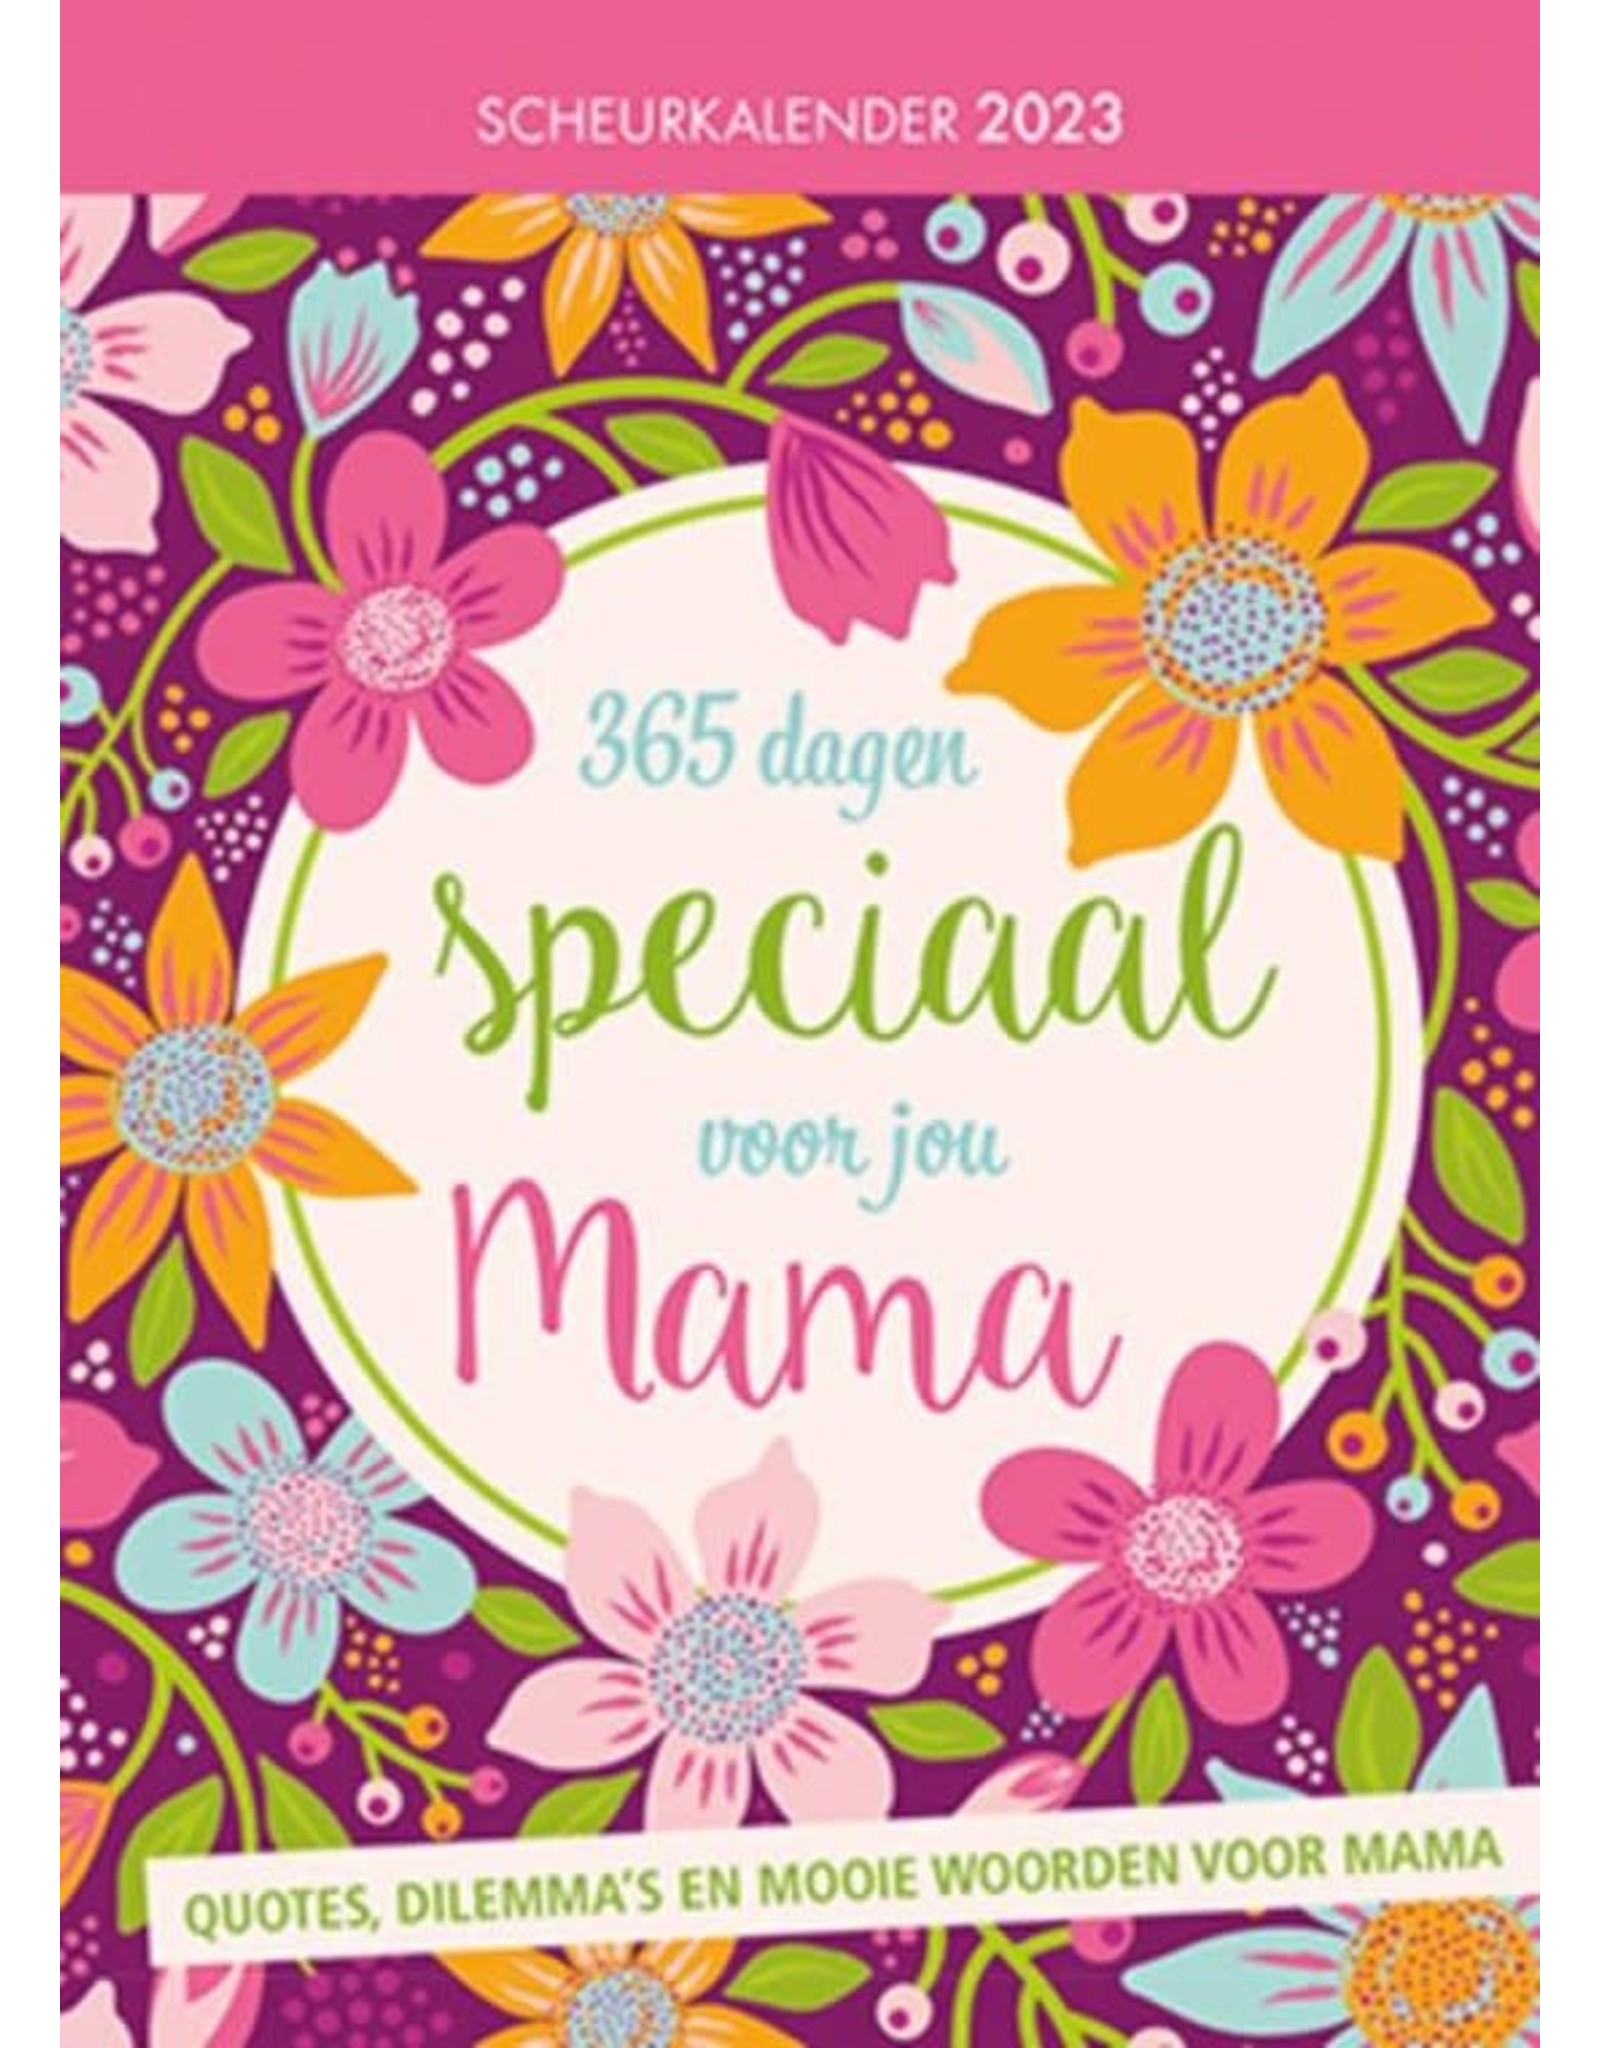 MGP CARDS Scheurkalender 365 dagen speciaal voor jou mama 2023